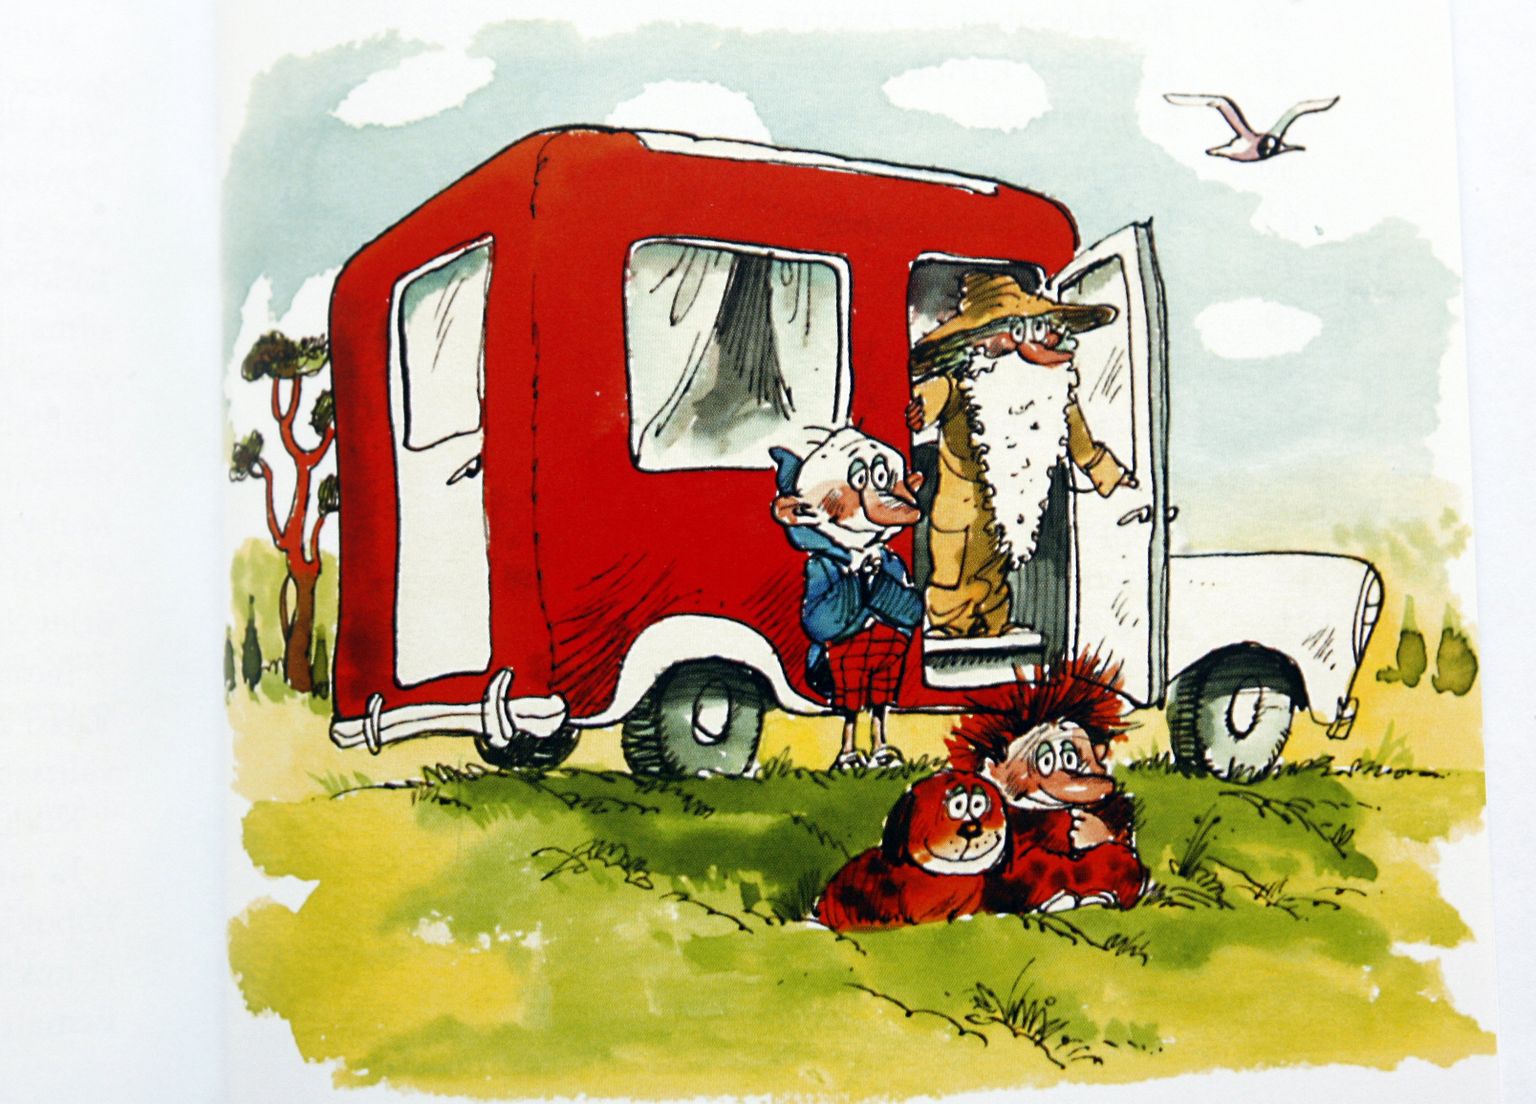 Eno Raua lasteraamatu "Naksitrallid" motiividel. Kolm naksitralli Sammalhabe, Kingpool ja Muhv saavad sõpradeks ning rändavad punase furgoonautoga mööda suviseid radu.
​